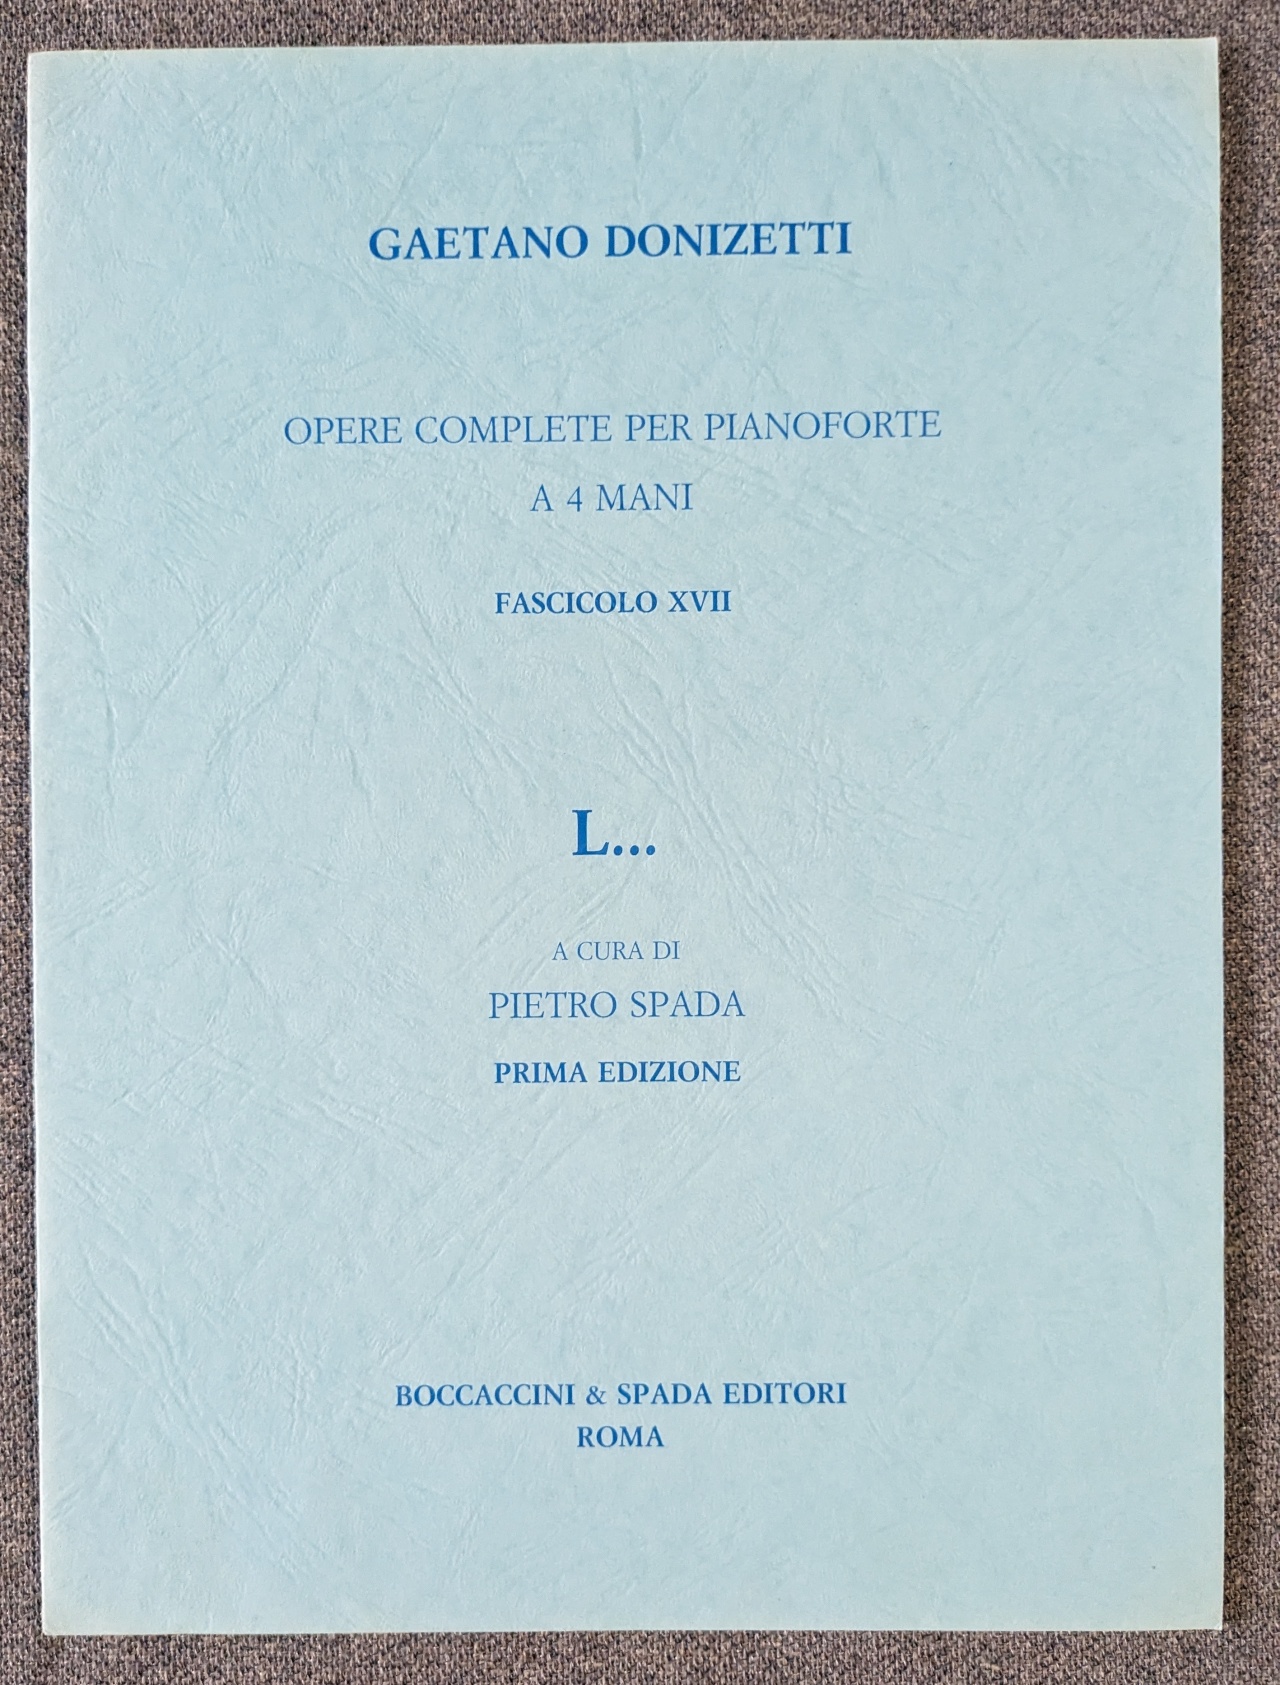 Gaetano Donizetti "L" No 17 - 4 Hands/1 Piano Boccaccini & Spada - Click Image to Close